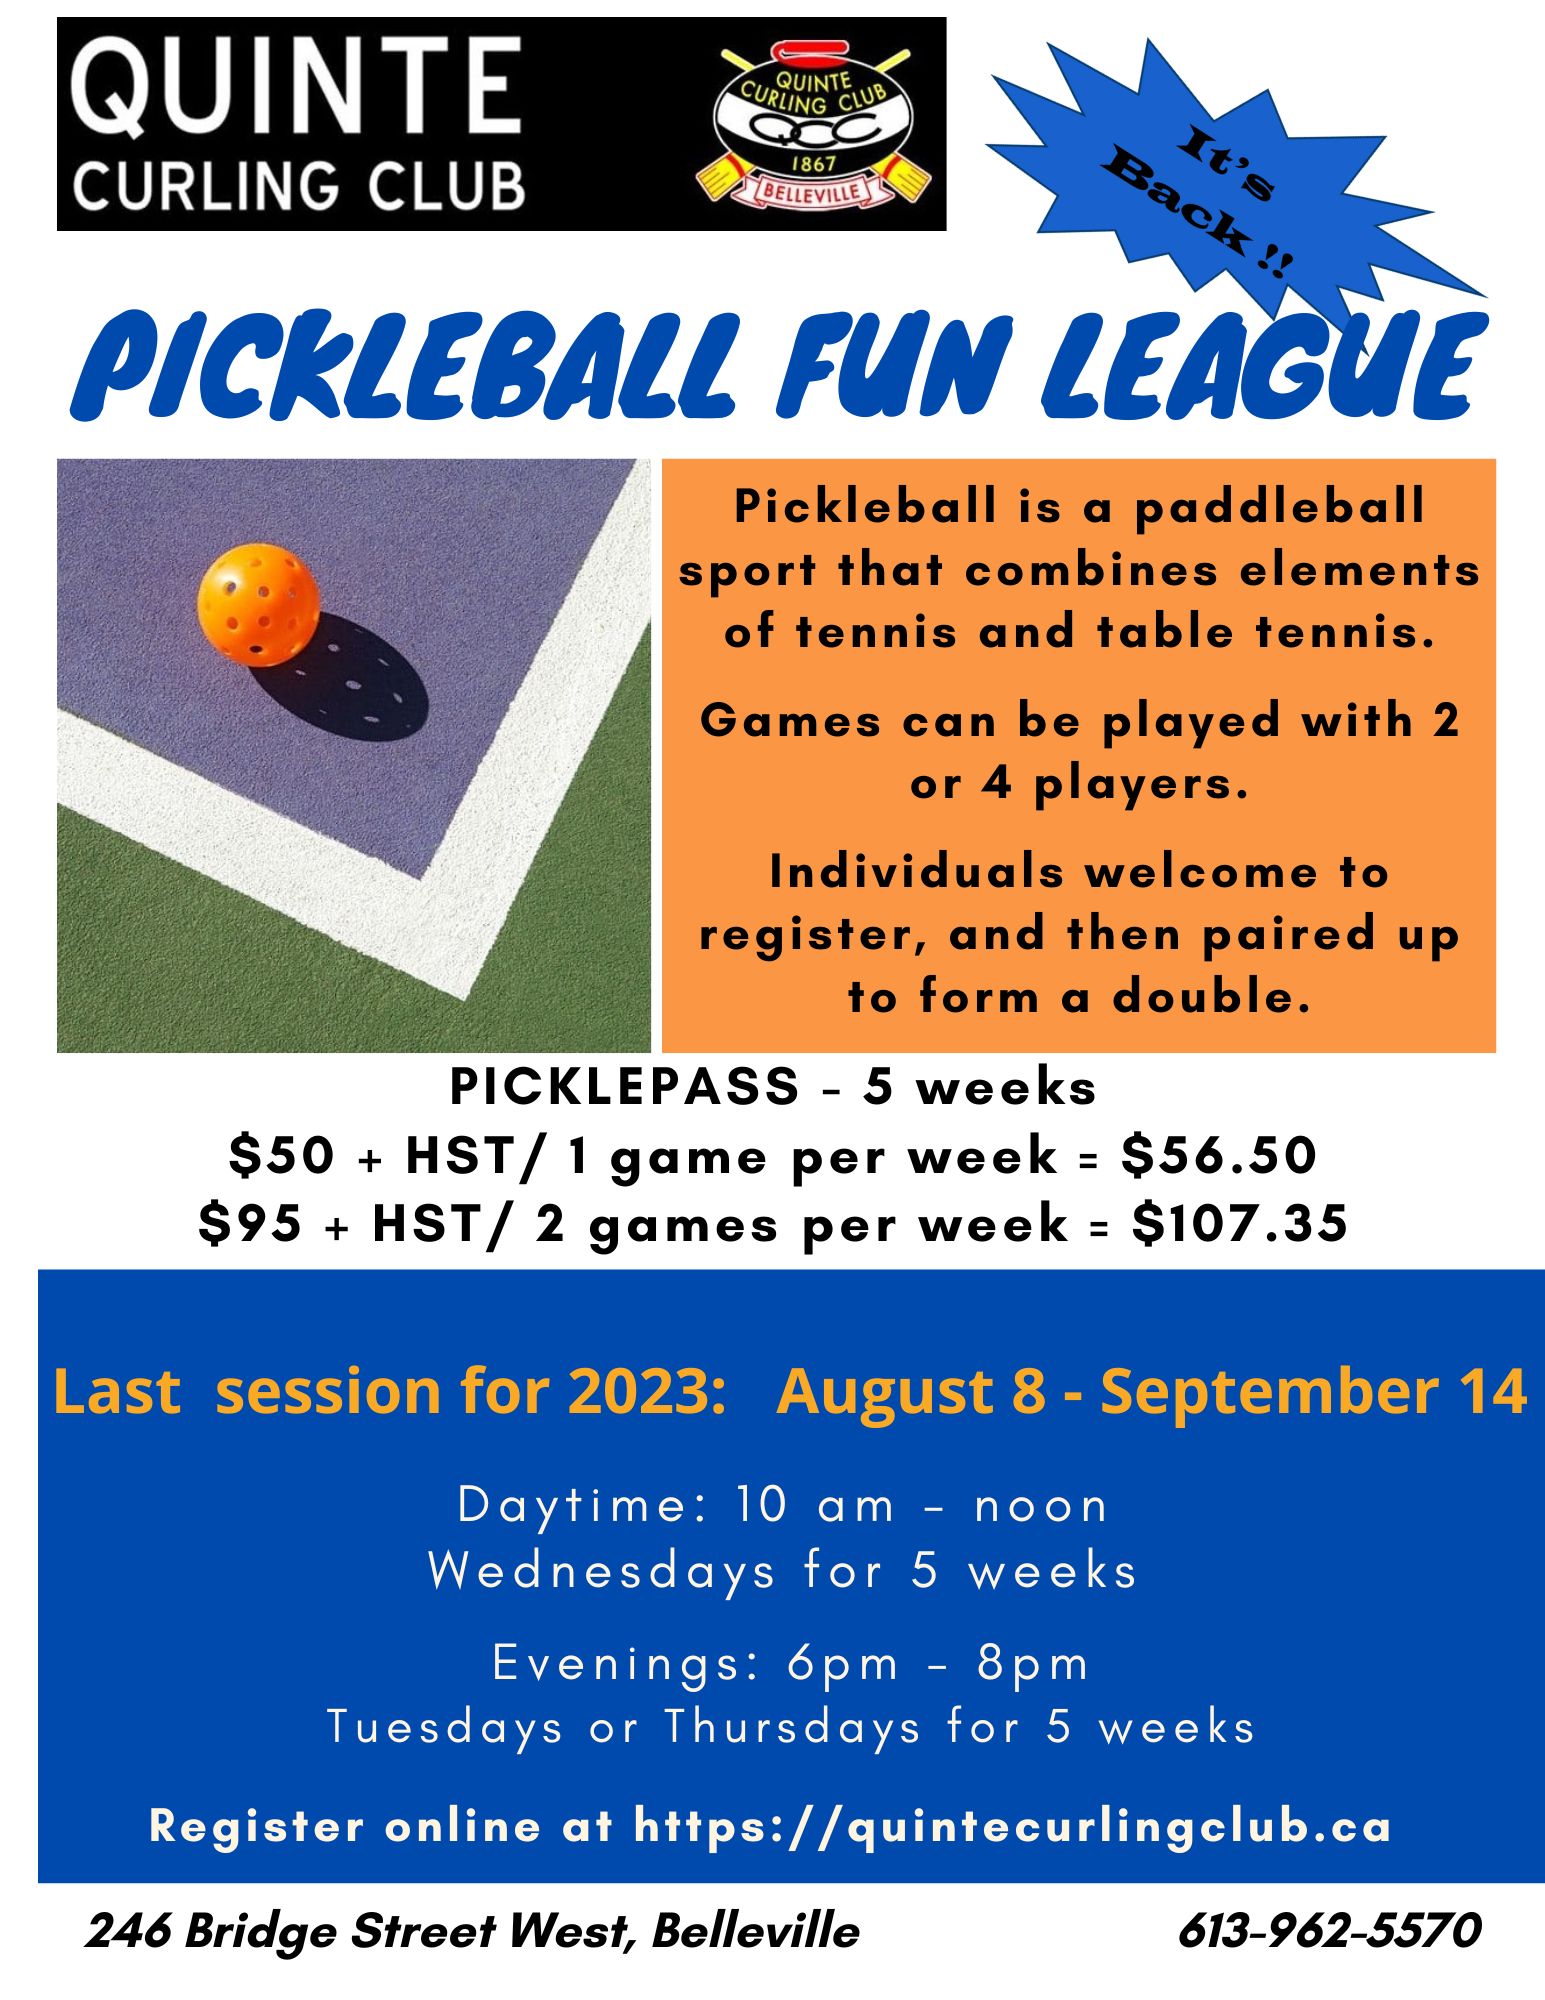 Pickleball Poster 2023 last session